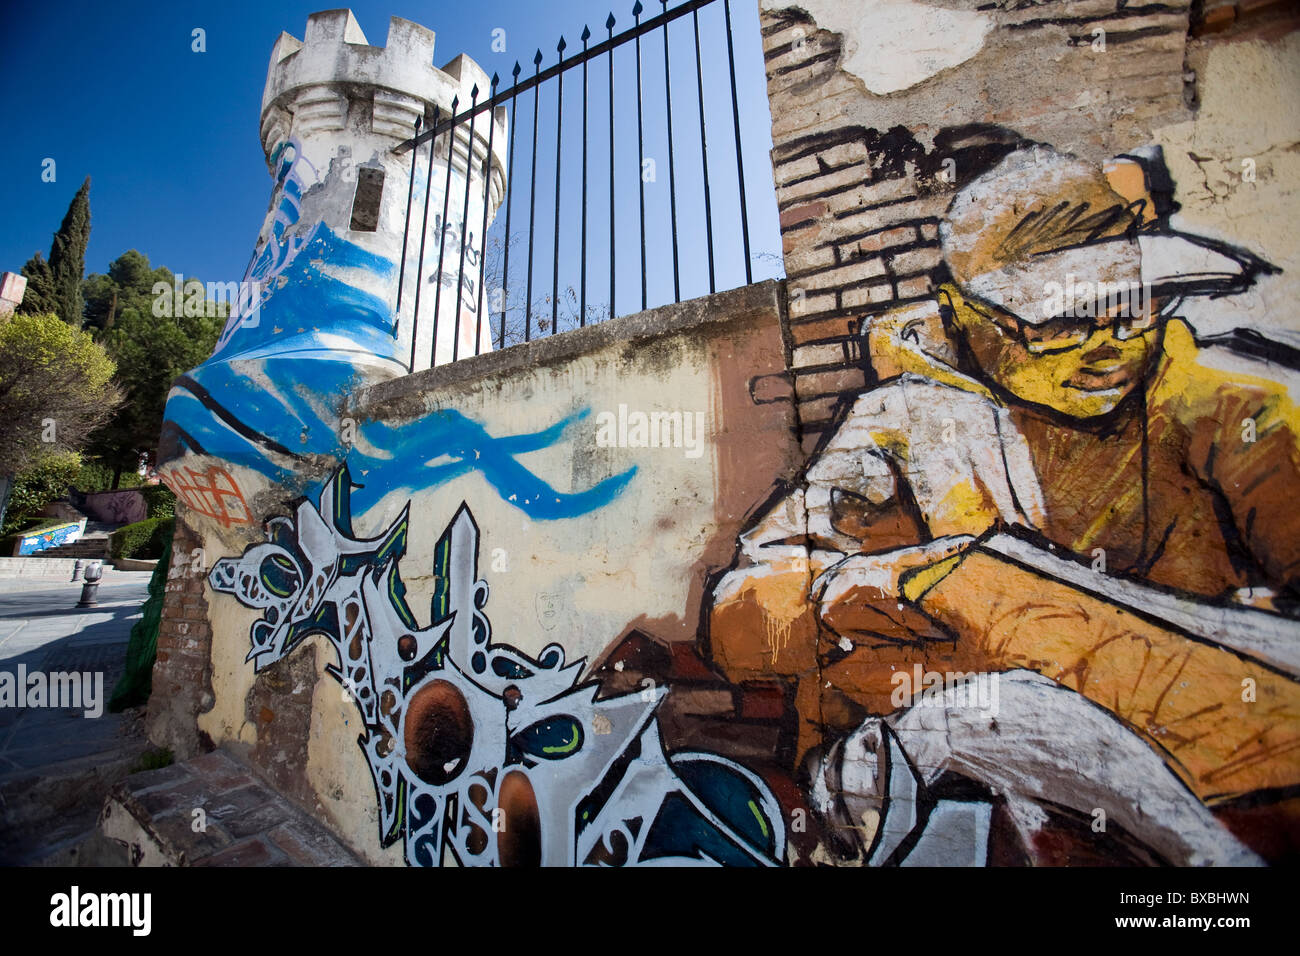 Graffiti de l'artiste El Nino de las Pinturas, Granada, Espagne Banque D'Images